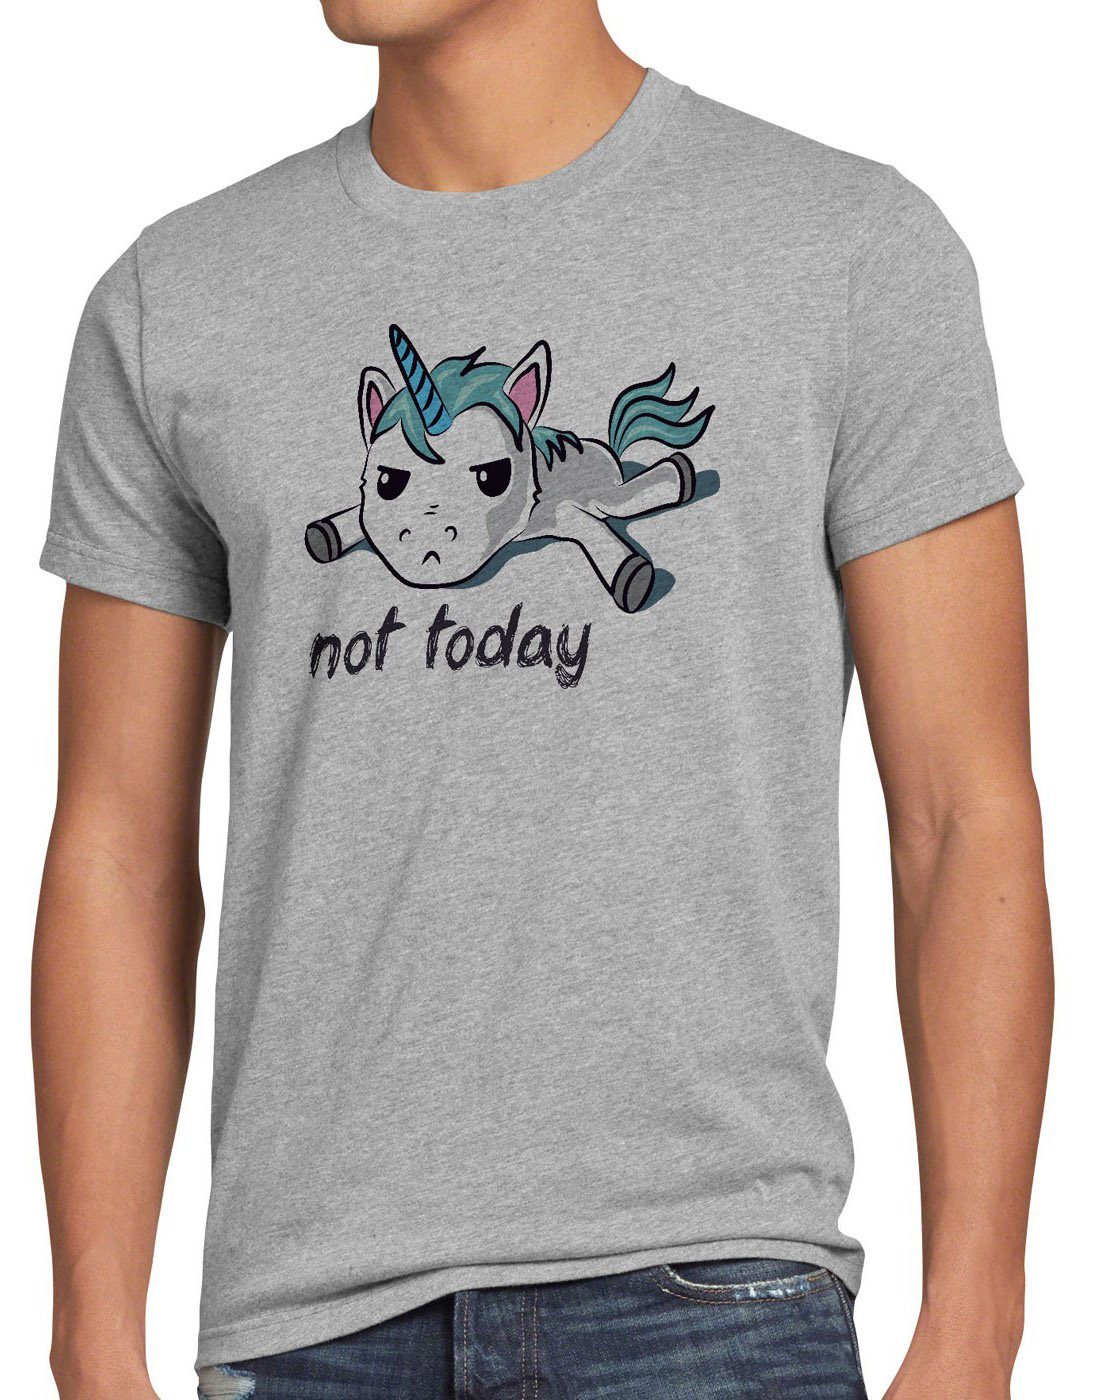 grau Not Einhorn Unicorn Print-Shirt today faul Herren style3 meliert fun spruch nicht T-Shirt funshirt heute